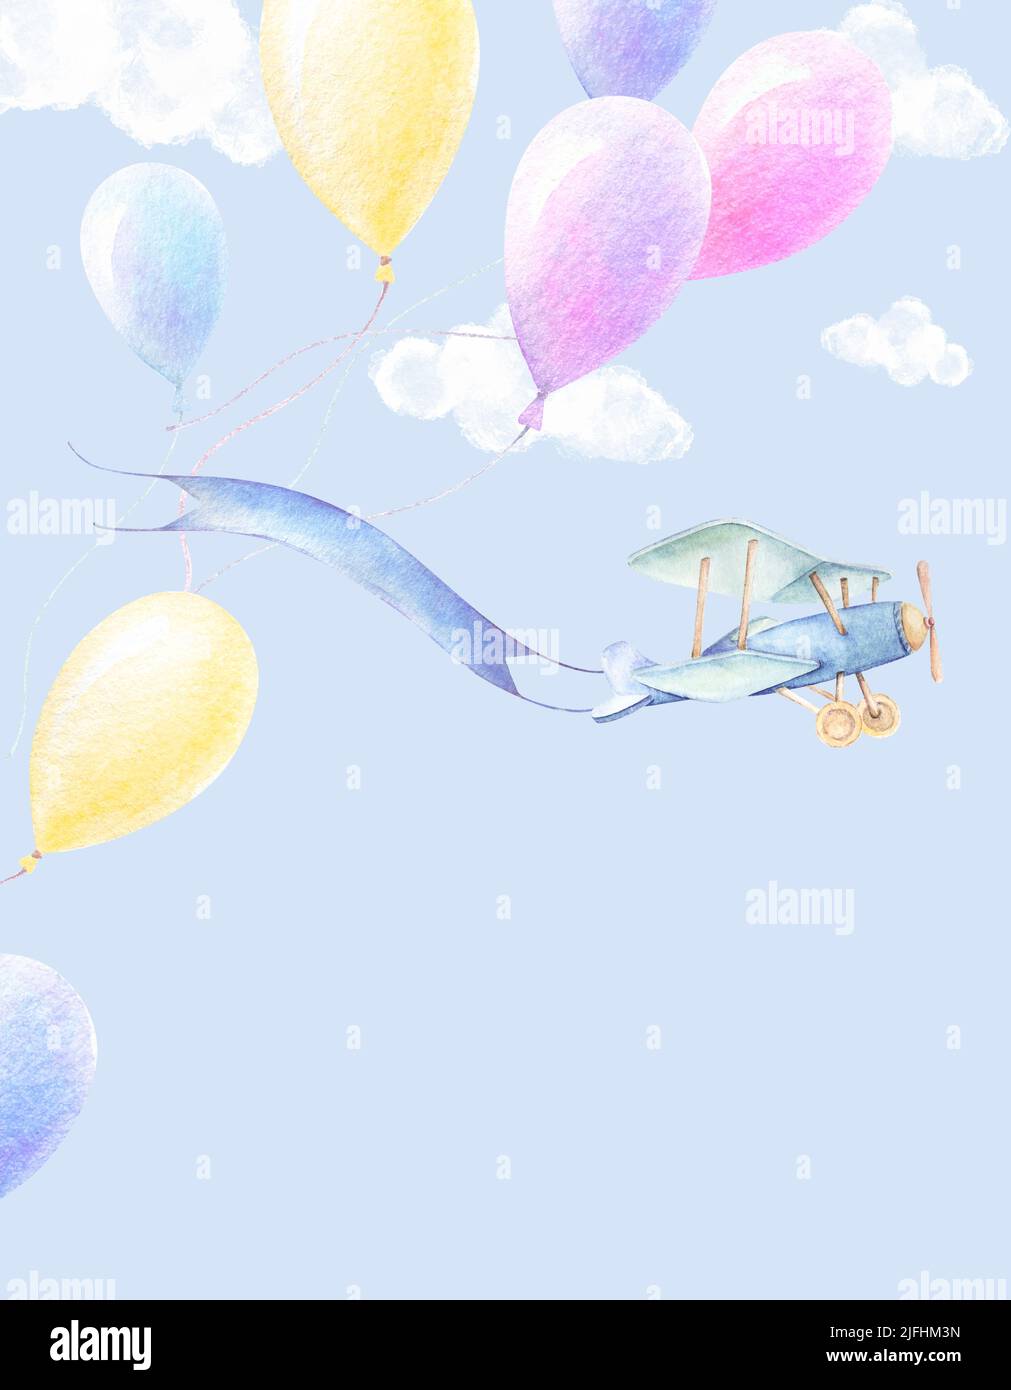 Poster dell'avventura del bambino. Volo aereo con nastro, palloncini colorati volano in cielo. Nuvole bianche sfondo blu. Bambino doccia tema ragazzo Foto Stock